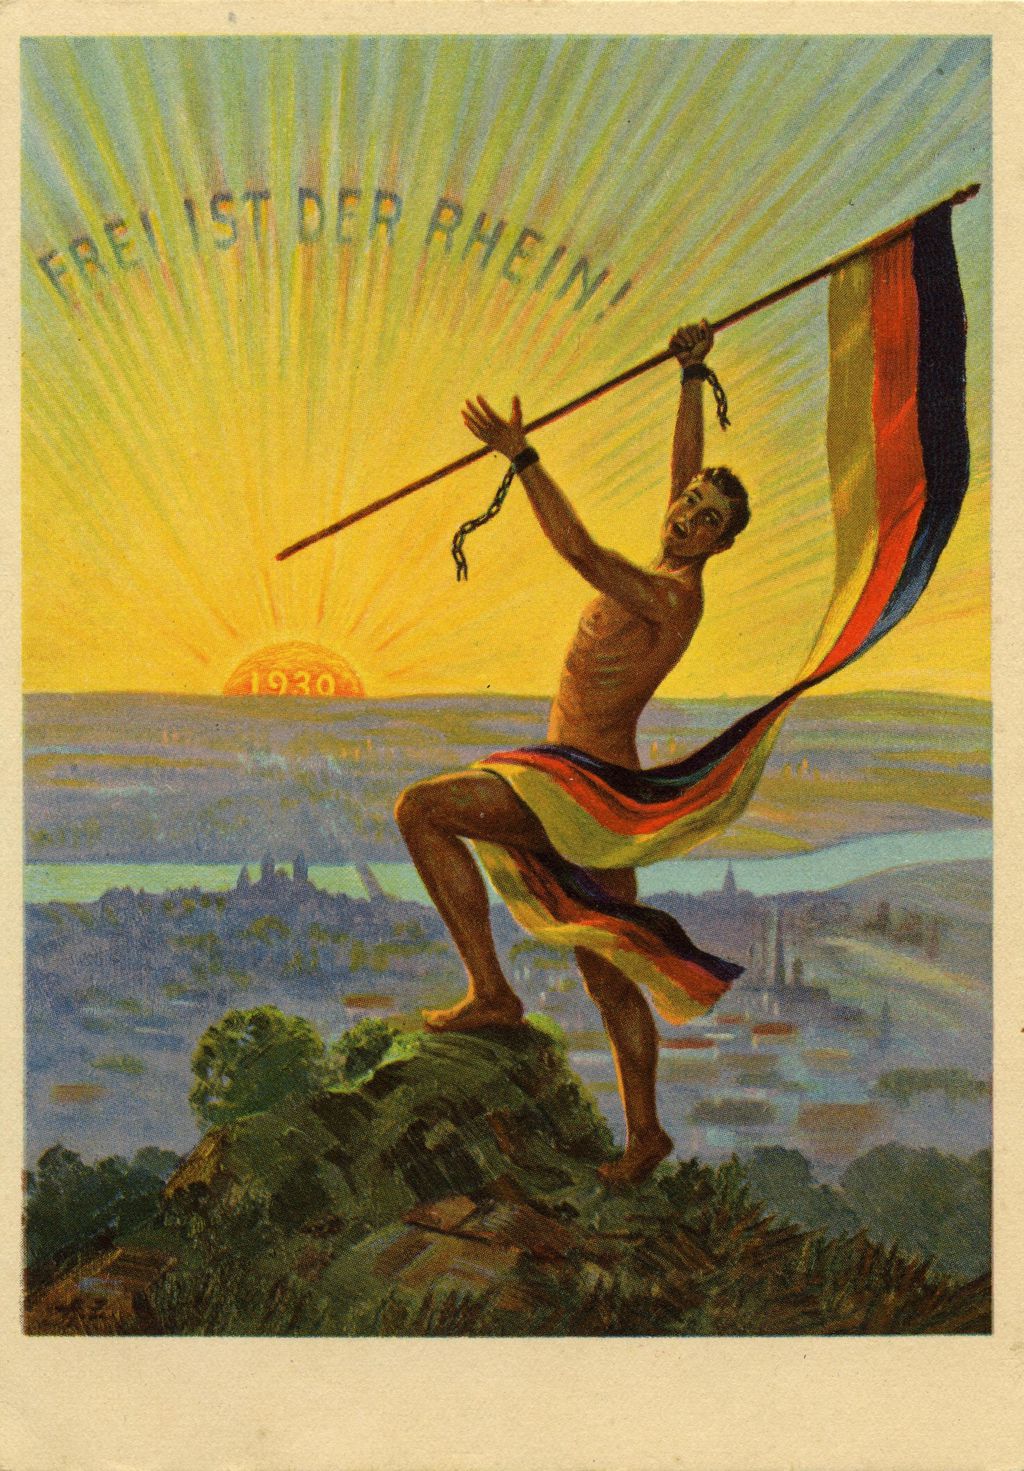 Exponat: Postkarte: Frei ist der Rhein, 1930